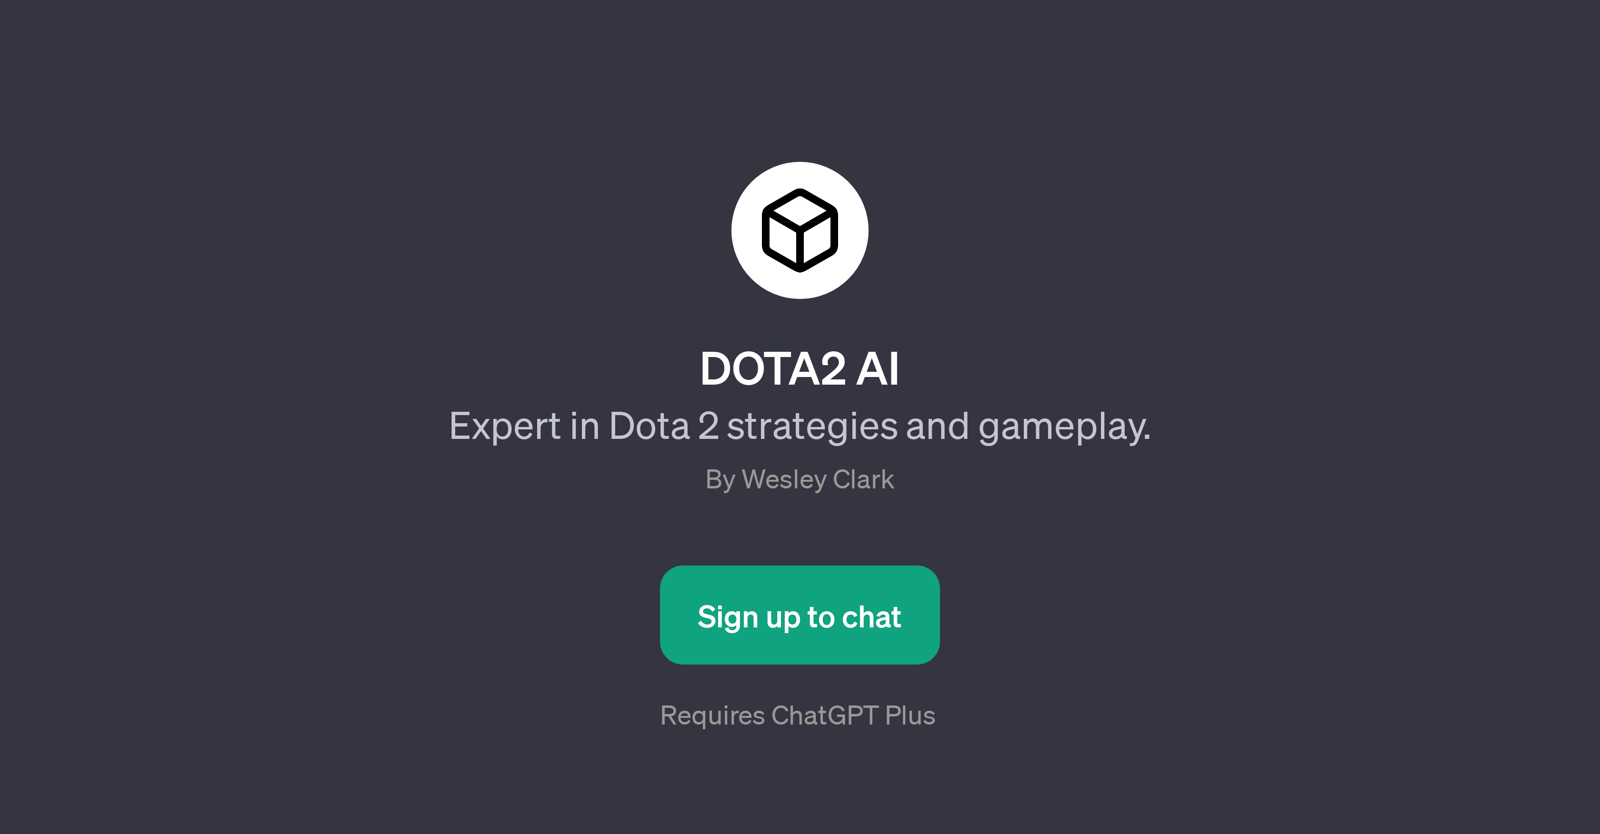 DOTA2 AI website